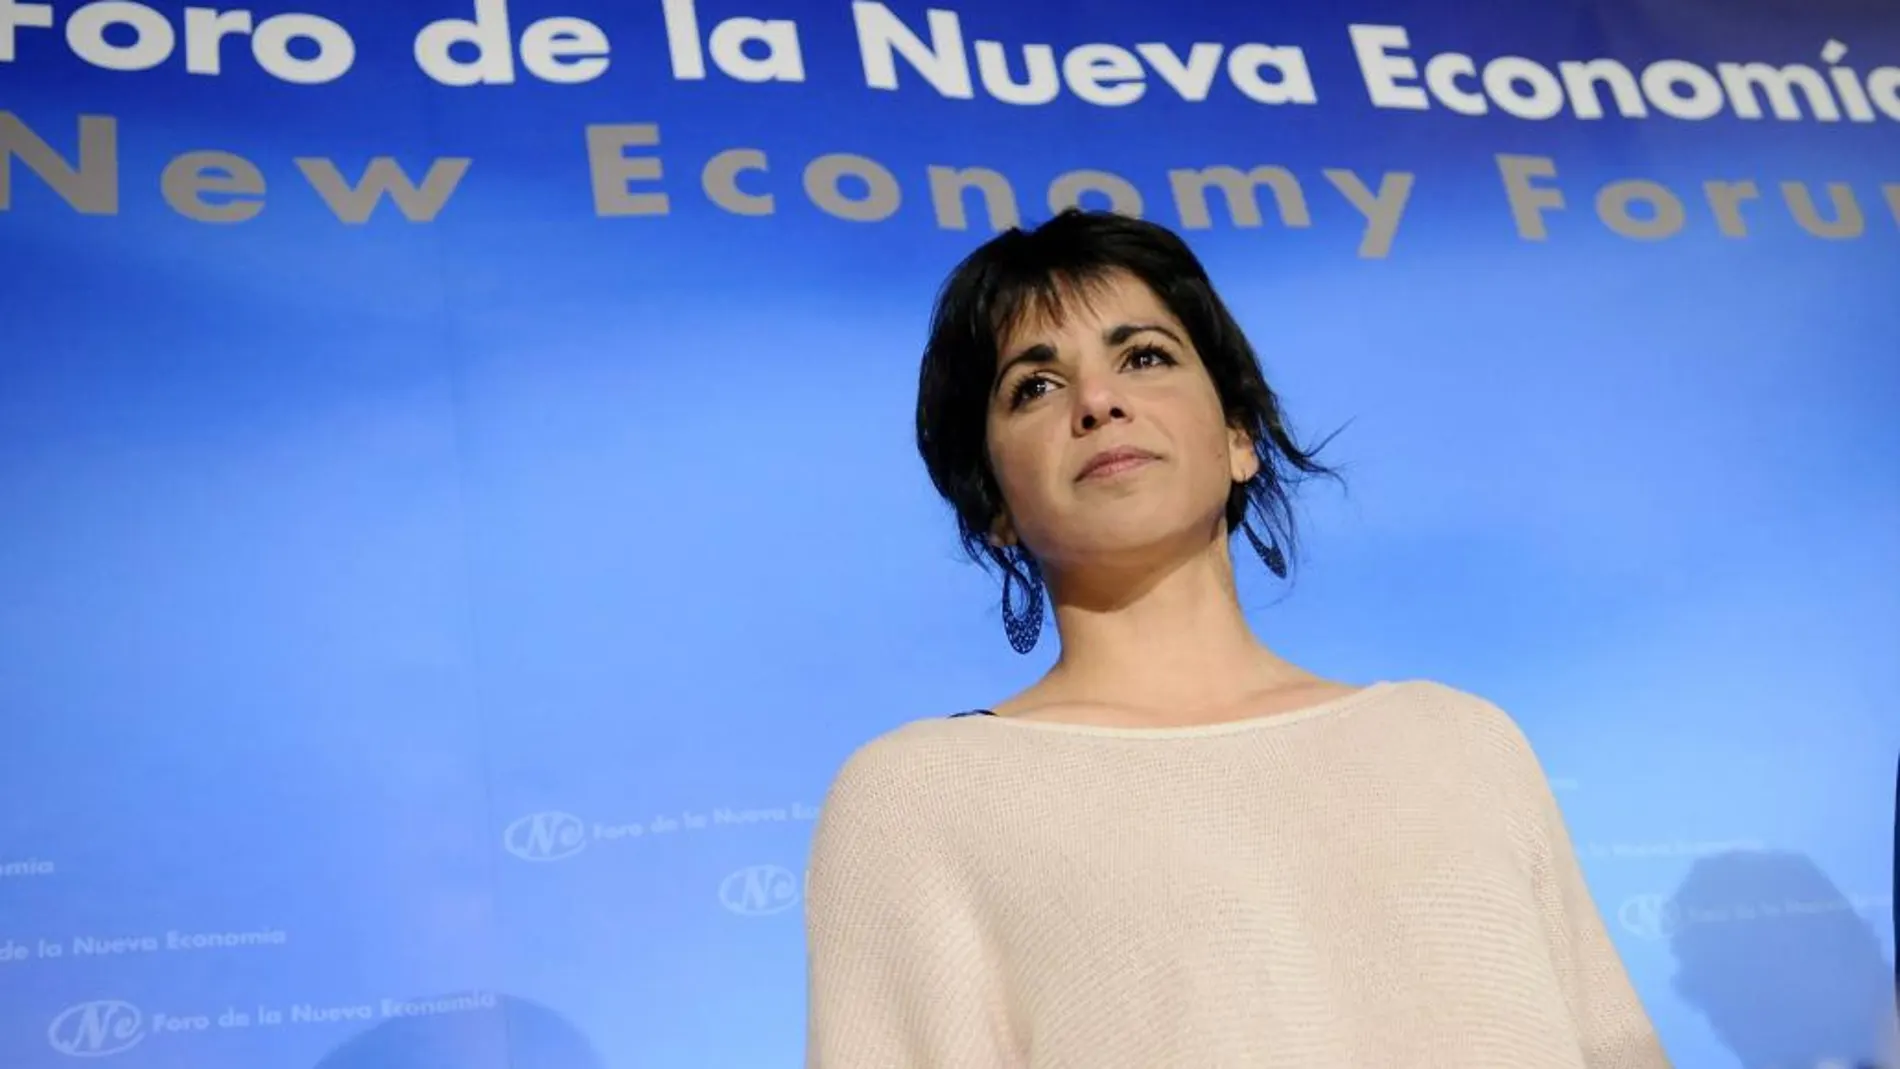 La portavoz de Podemos en Andalucía , Teresa Rodríguez, dice que la Junta "debería haber tenido más rigor y control"sobre el dinero